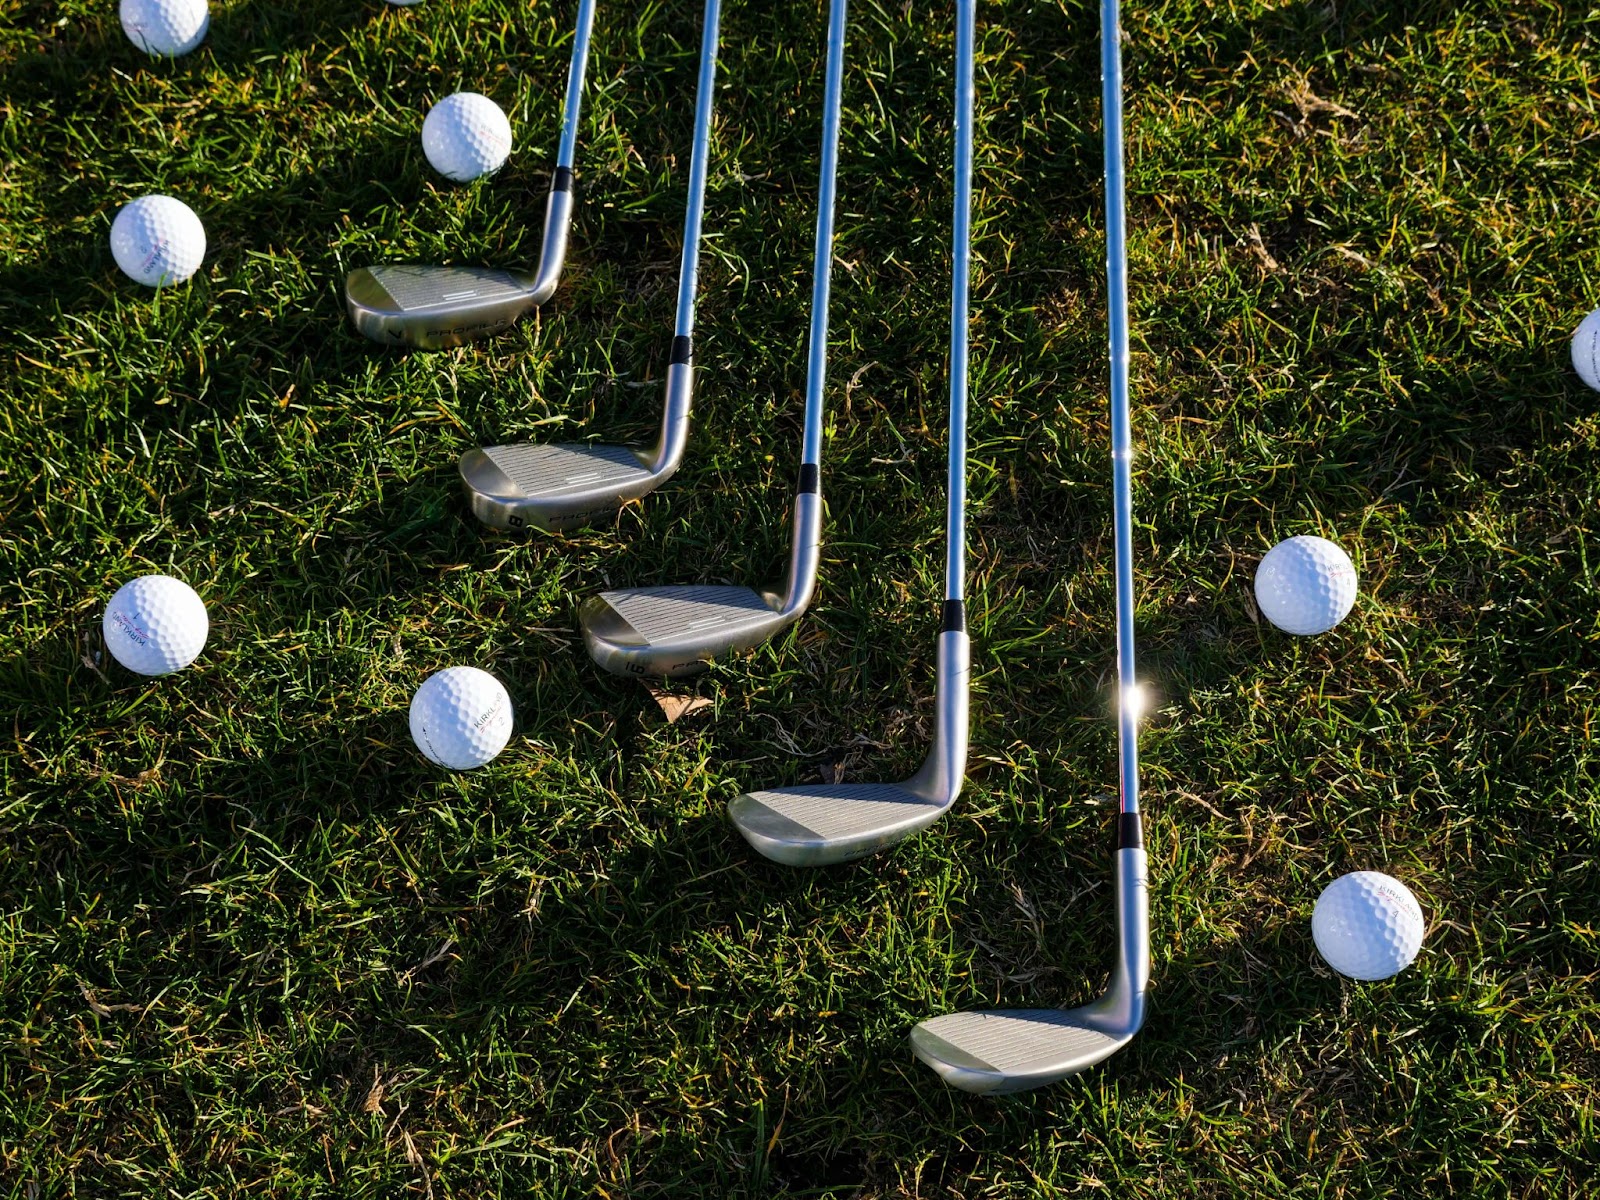 golf clubs and golf balls on grass